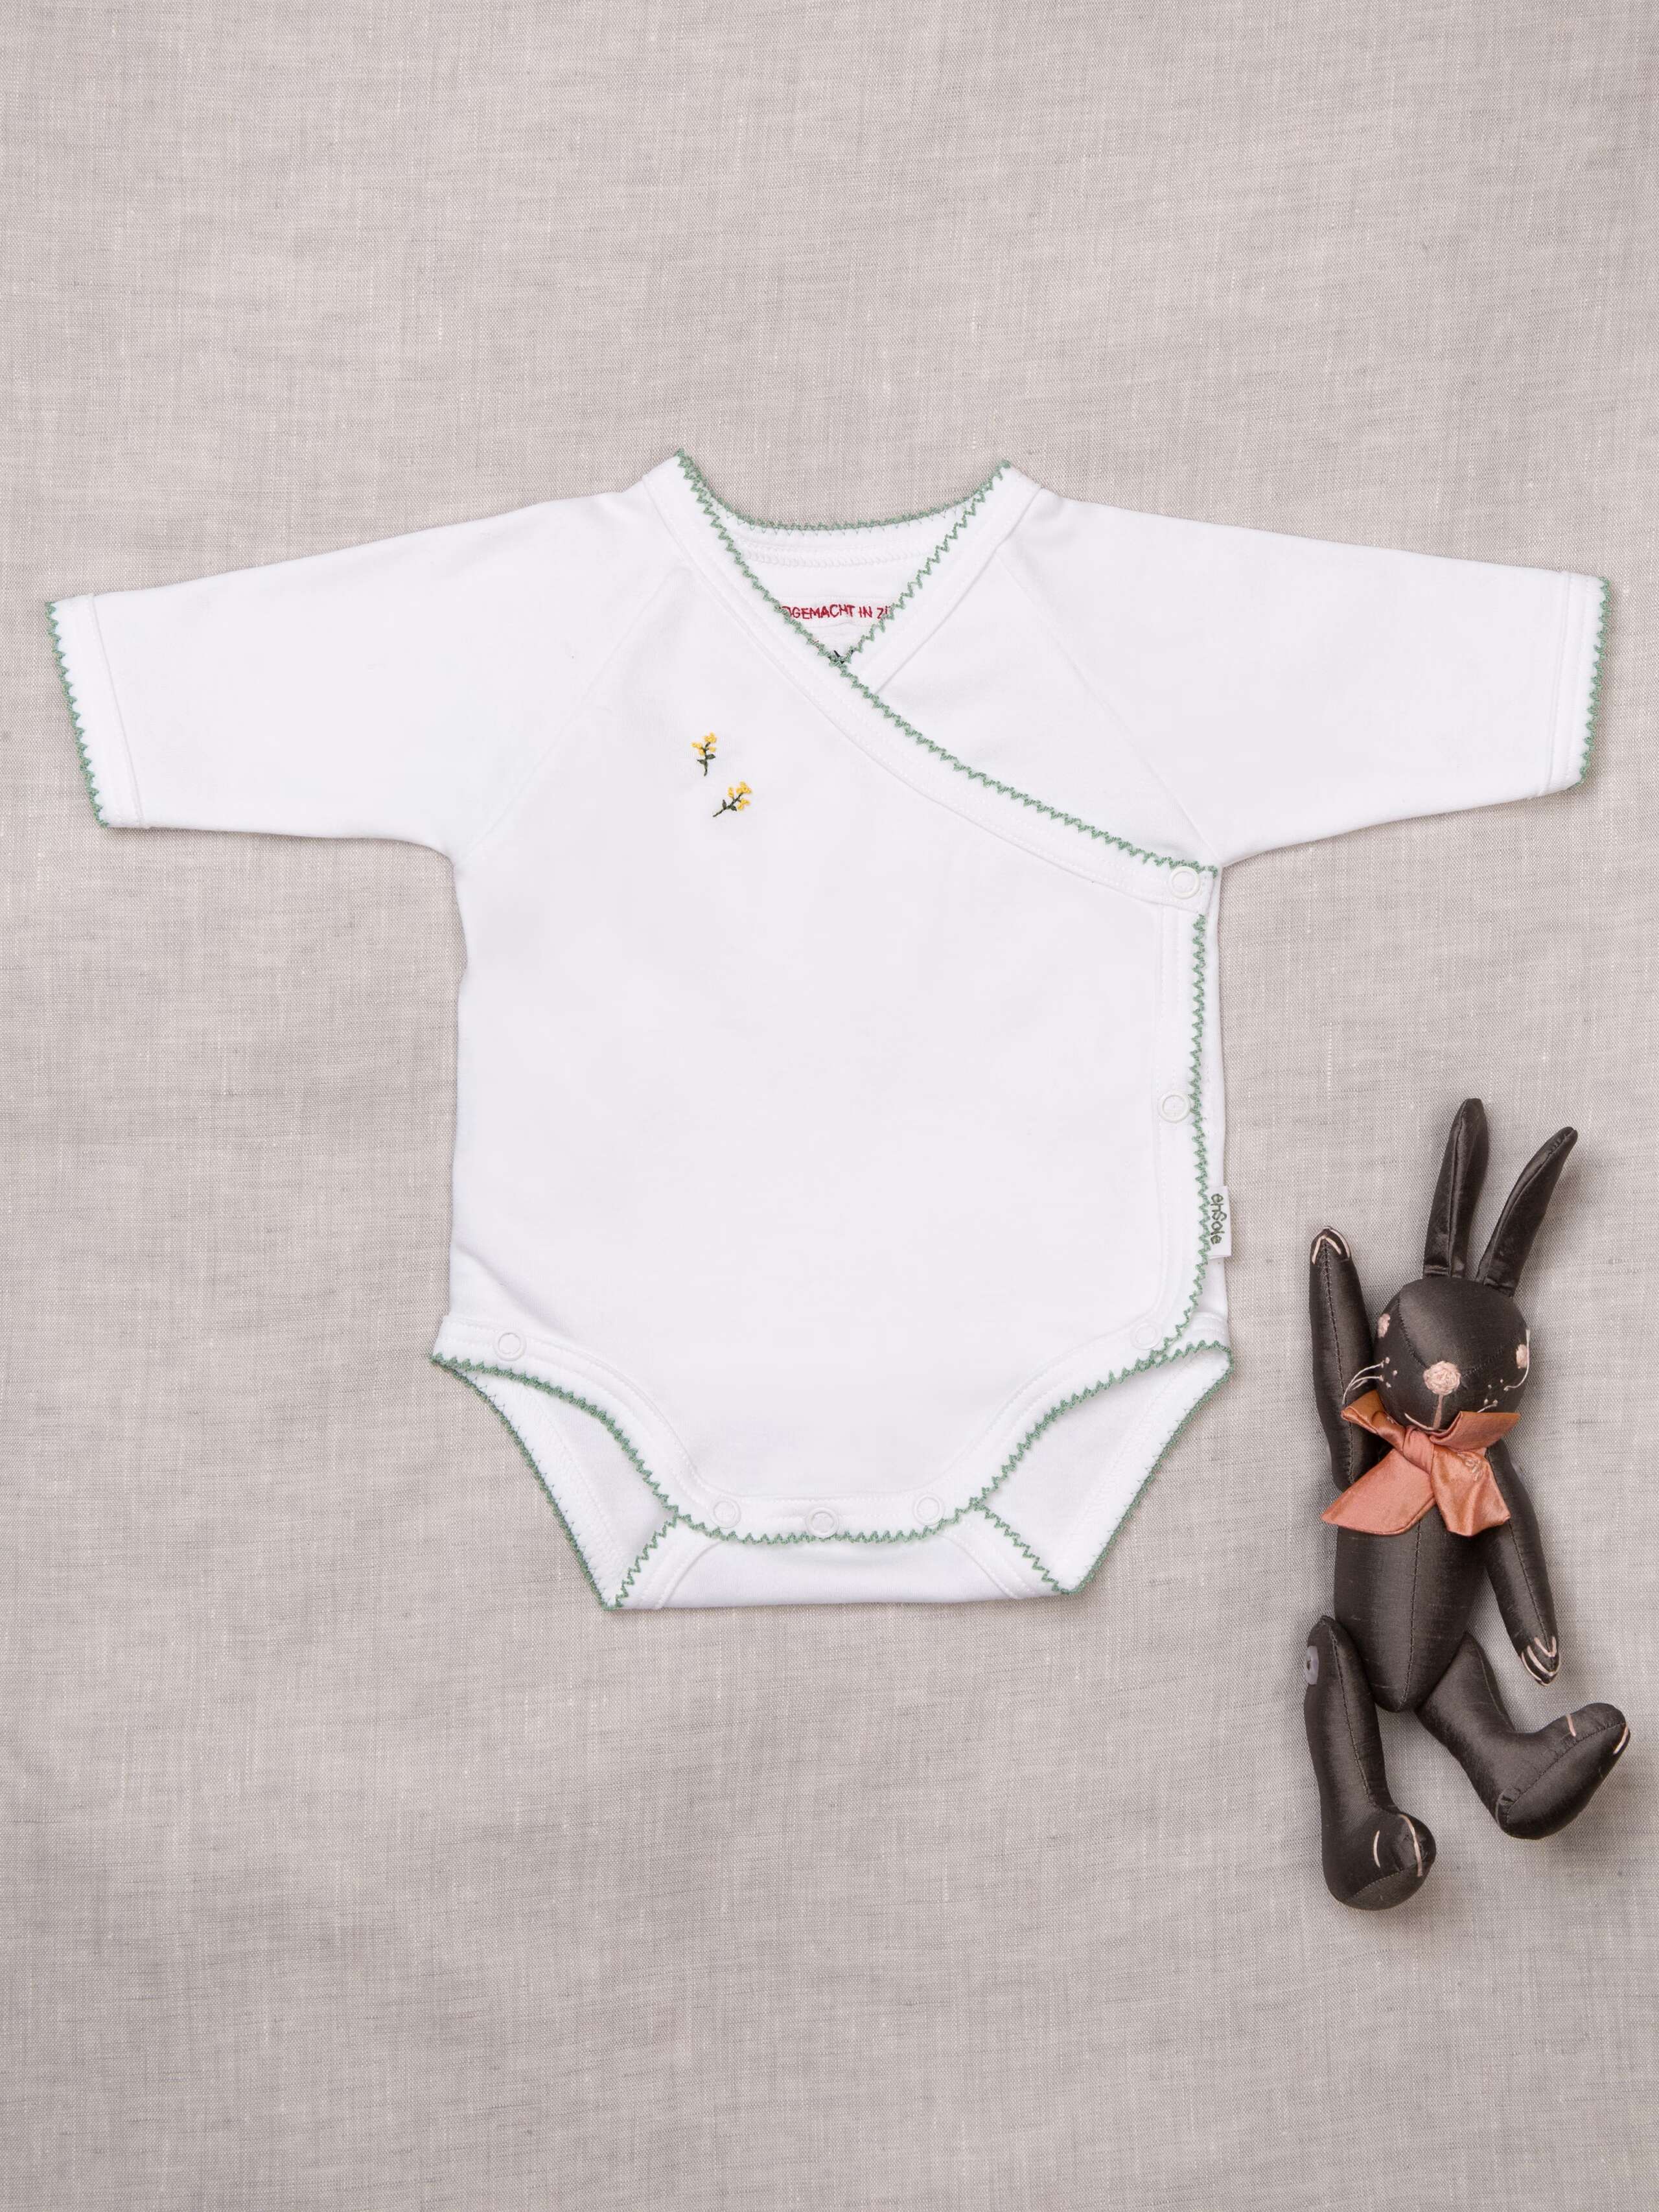 Body (bébé 3 -6 mois) - Textiles - Les Routiers Suisses